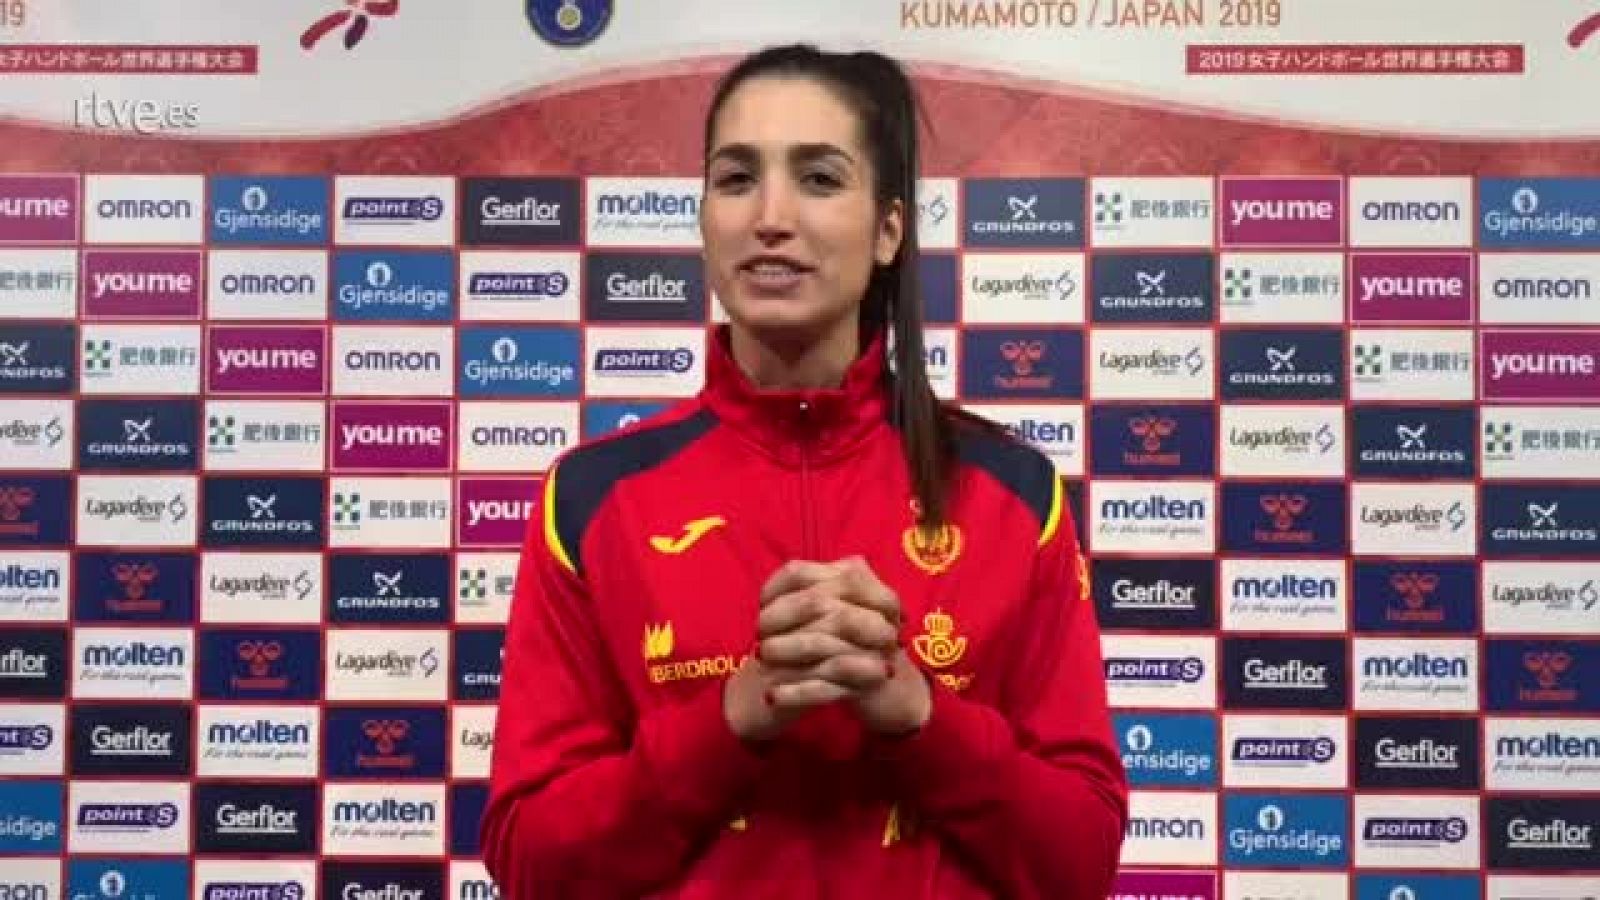 La jugadora española analiza el partido ante Rumanía con el que España ha debutado en el Mundial de balonmano femenino de Japón 2019.